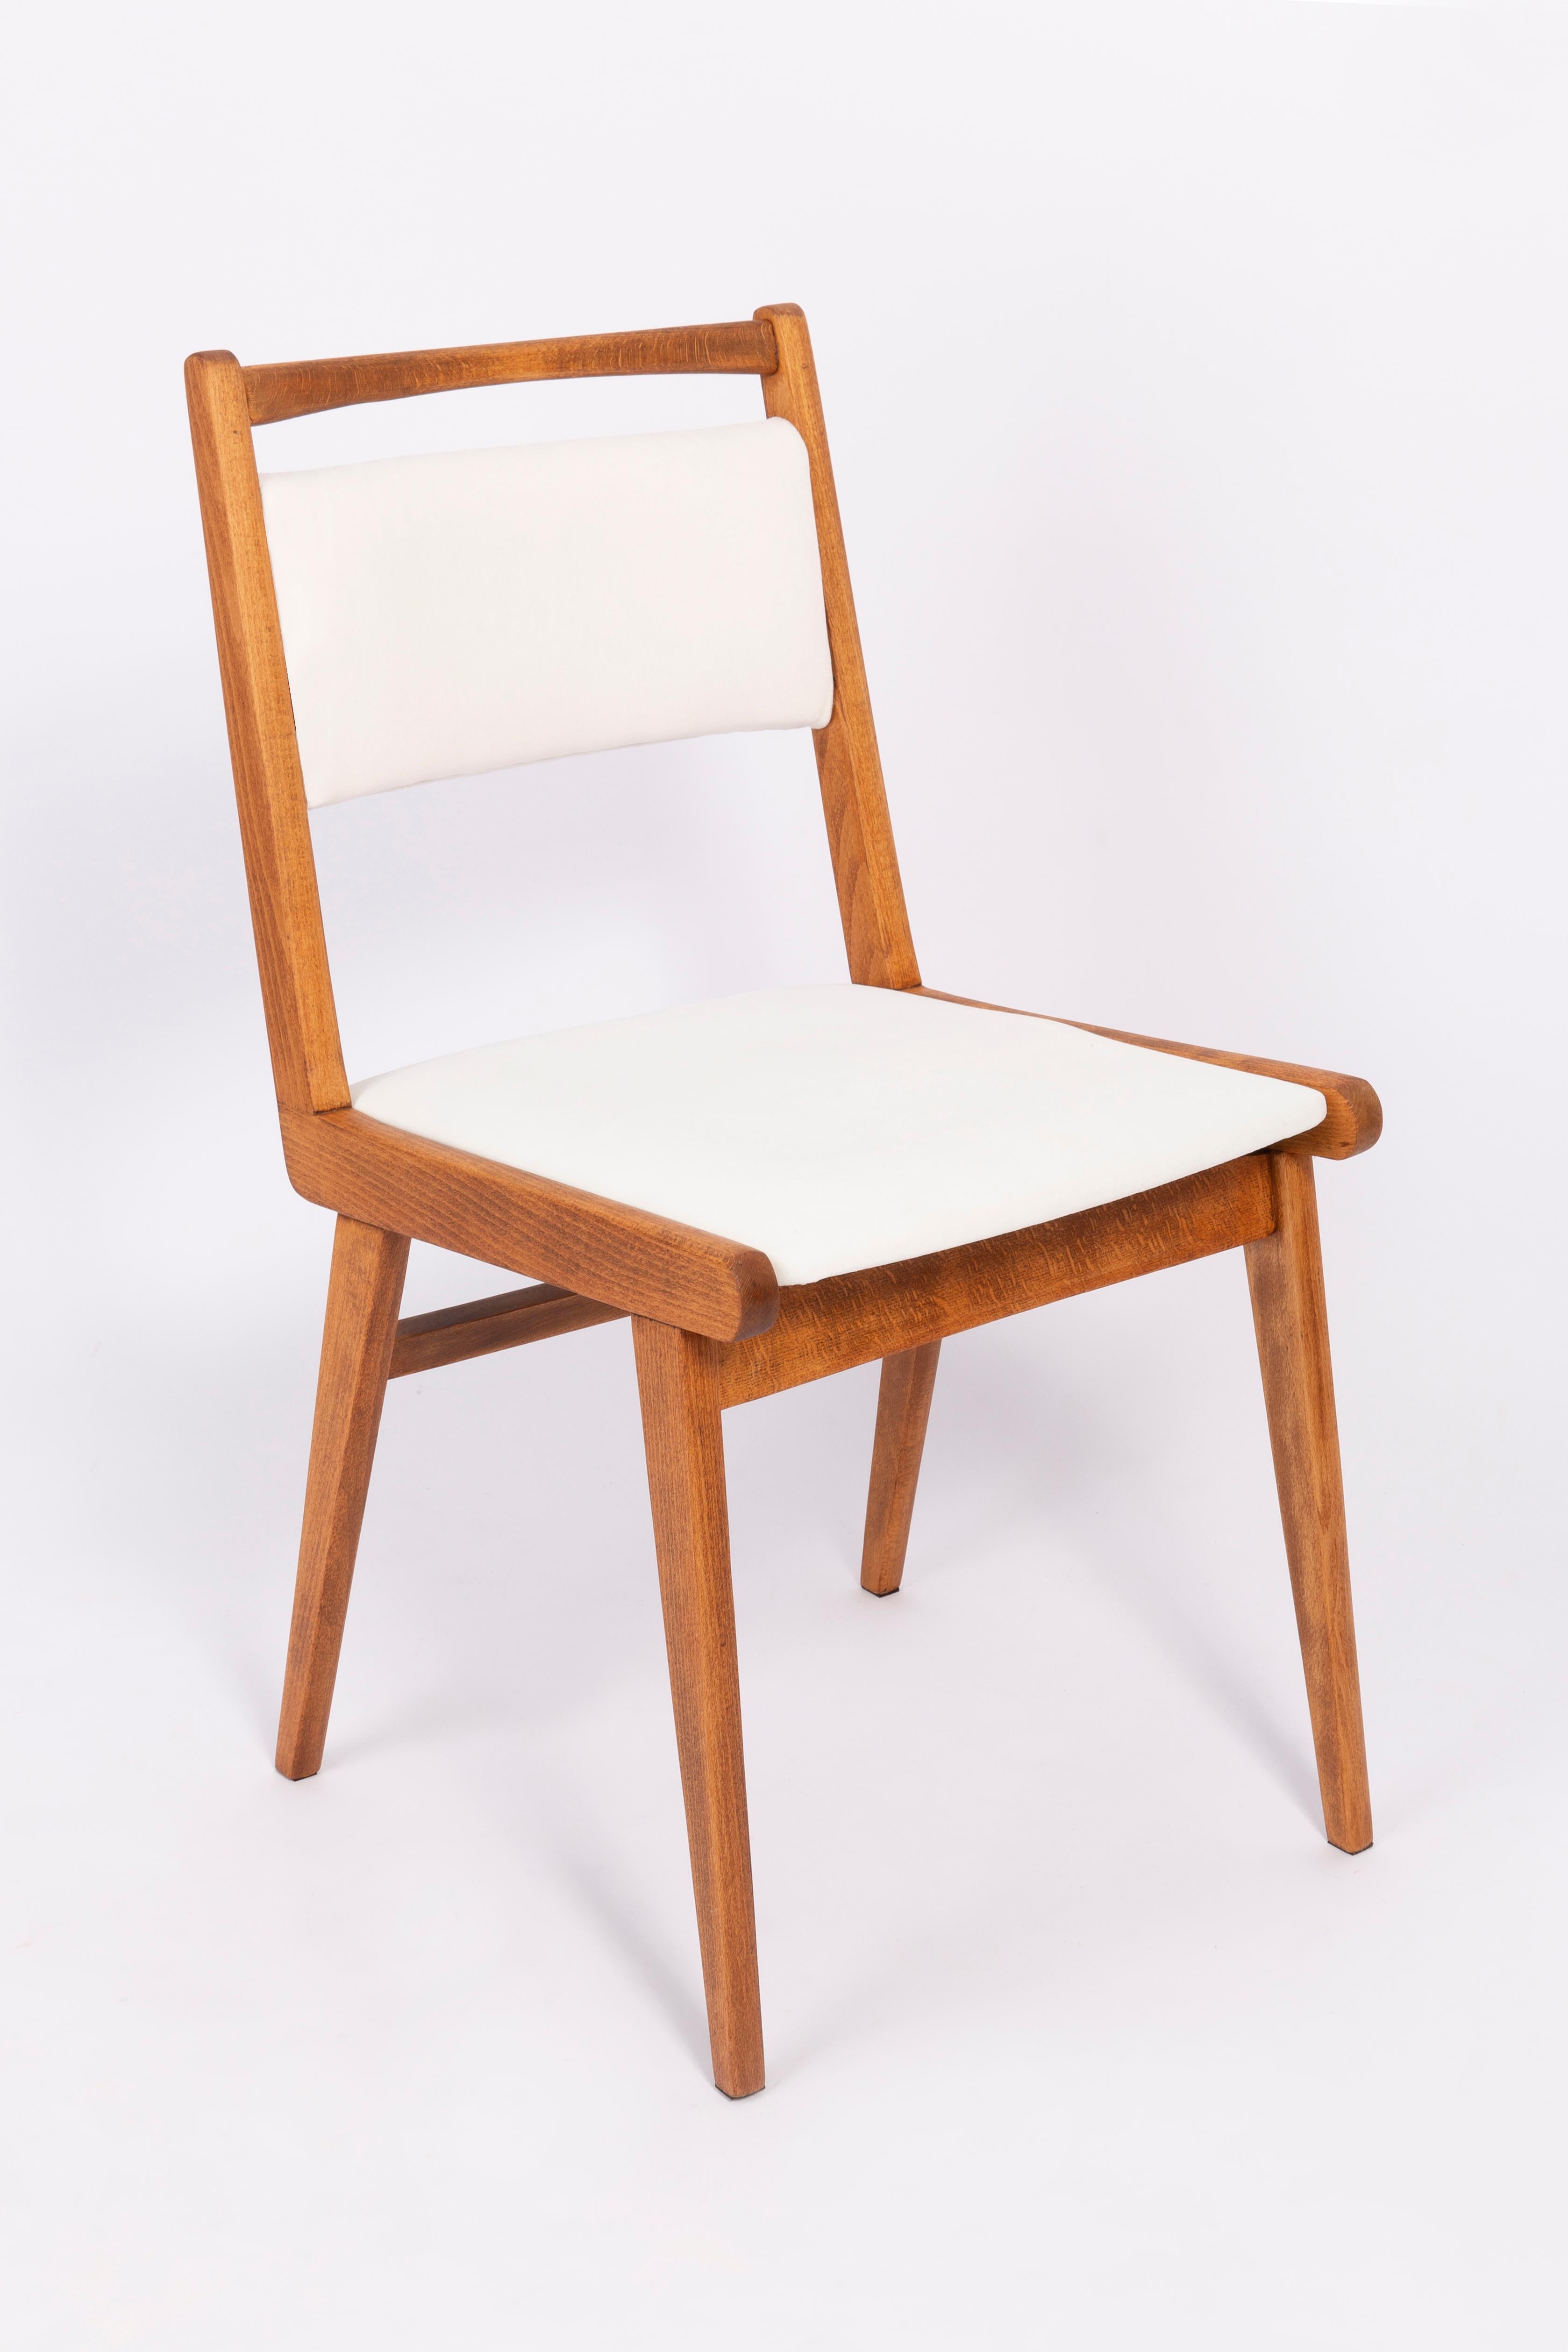 Chaises conçues par le professeur Rajmund Halas. C'est un modèle de type jar. Fabriqué en bois de hêtre. Les chaises ont été entièrement rénovées et les boiseries ont été rafraîchies. L'assise et le dossier sont habillés d'un tissu en velours blanc,